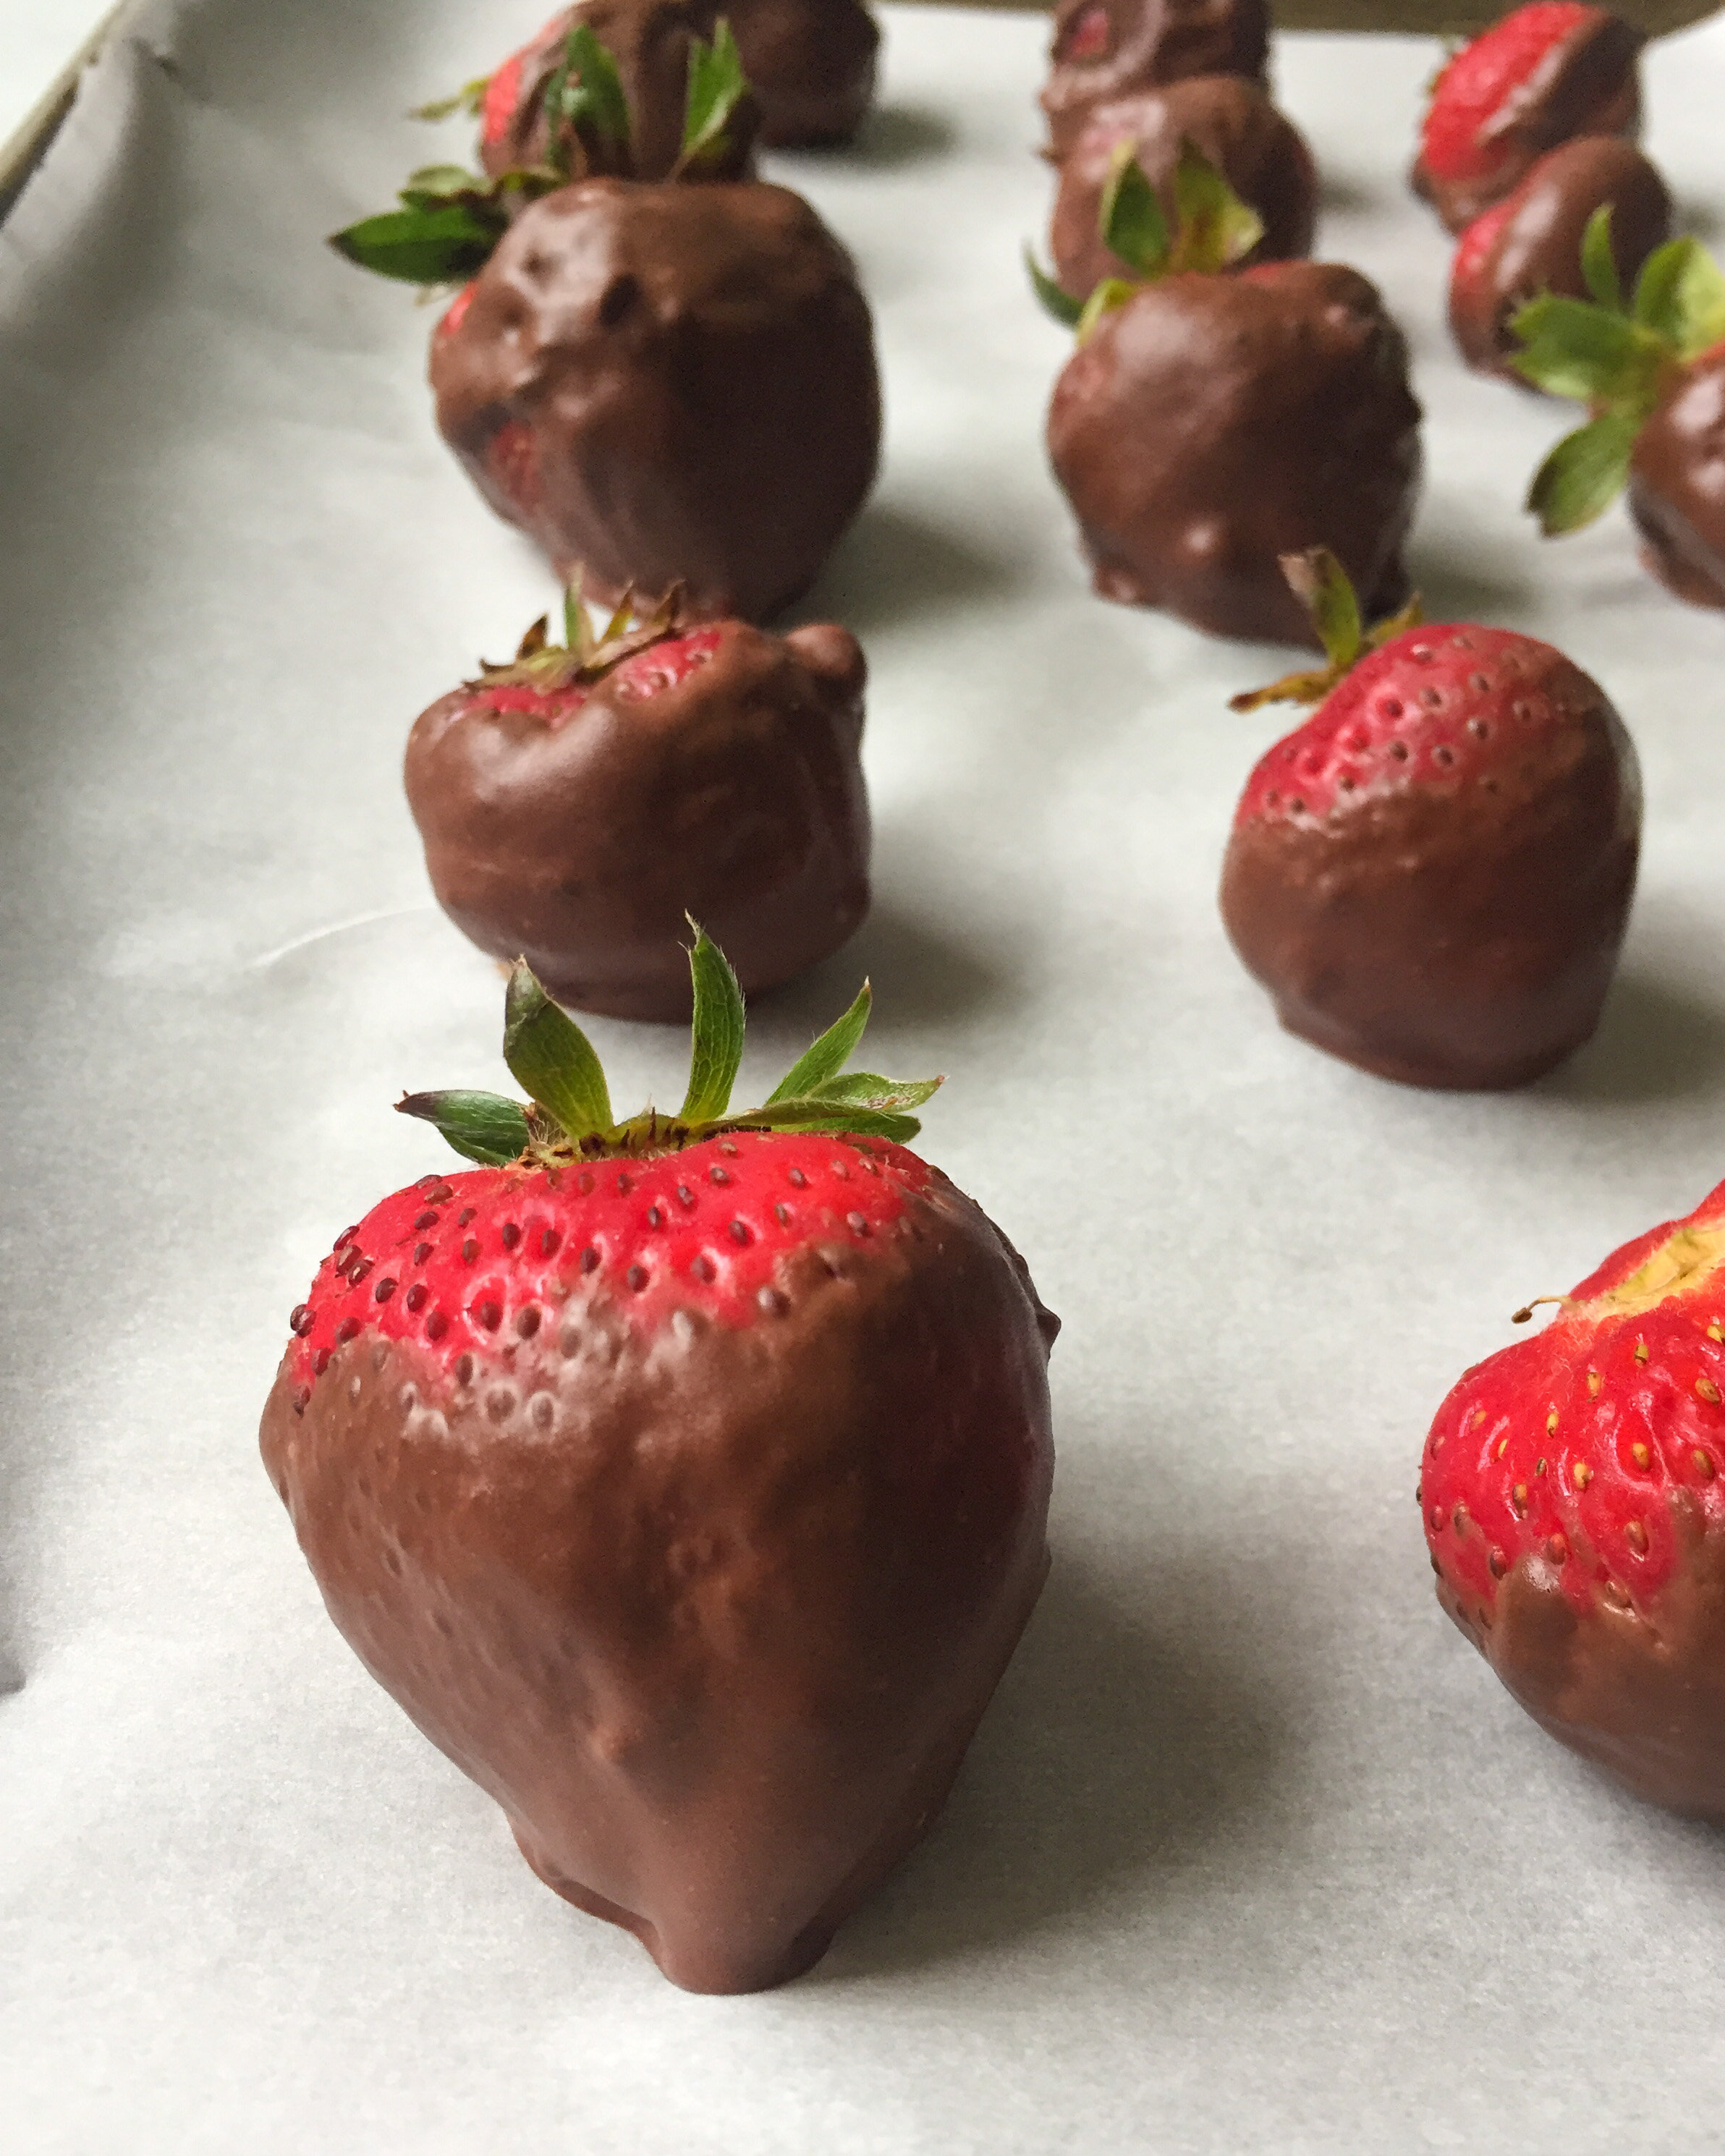 How to Make Dark Chocolate Covered Strawberries